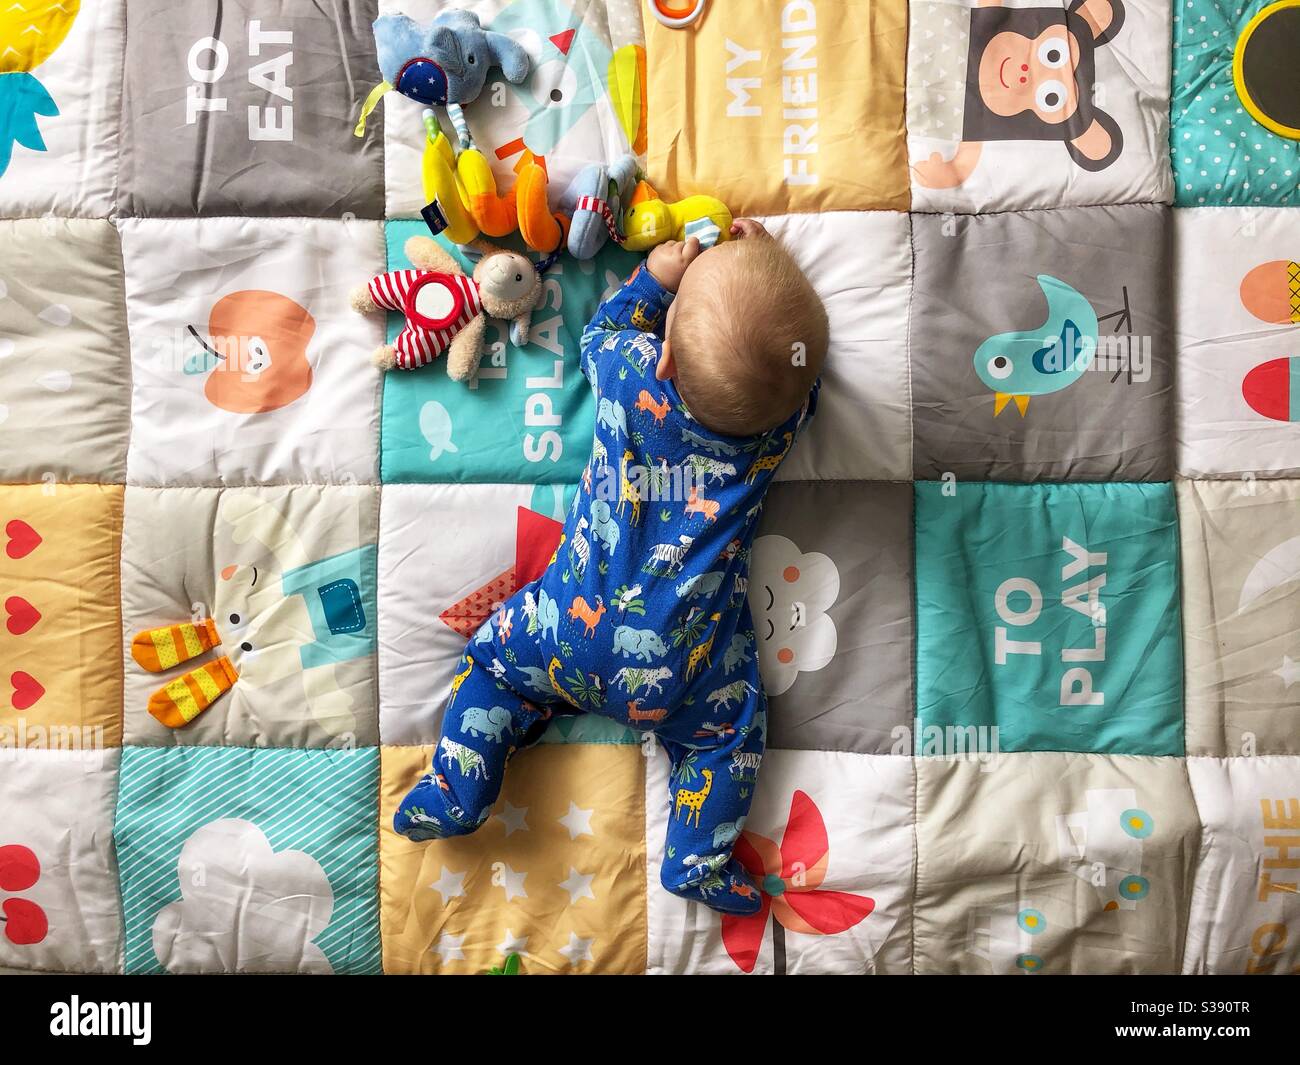 bébé de 5 mois jouant sur un tapis de jeu coloré Banque D'Images